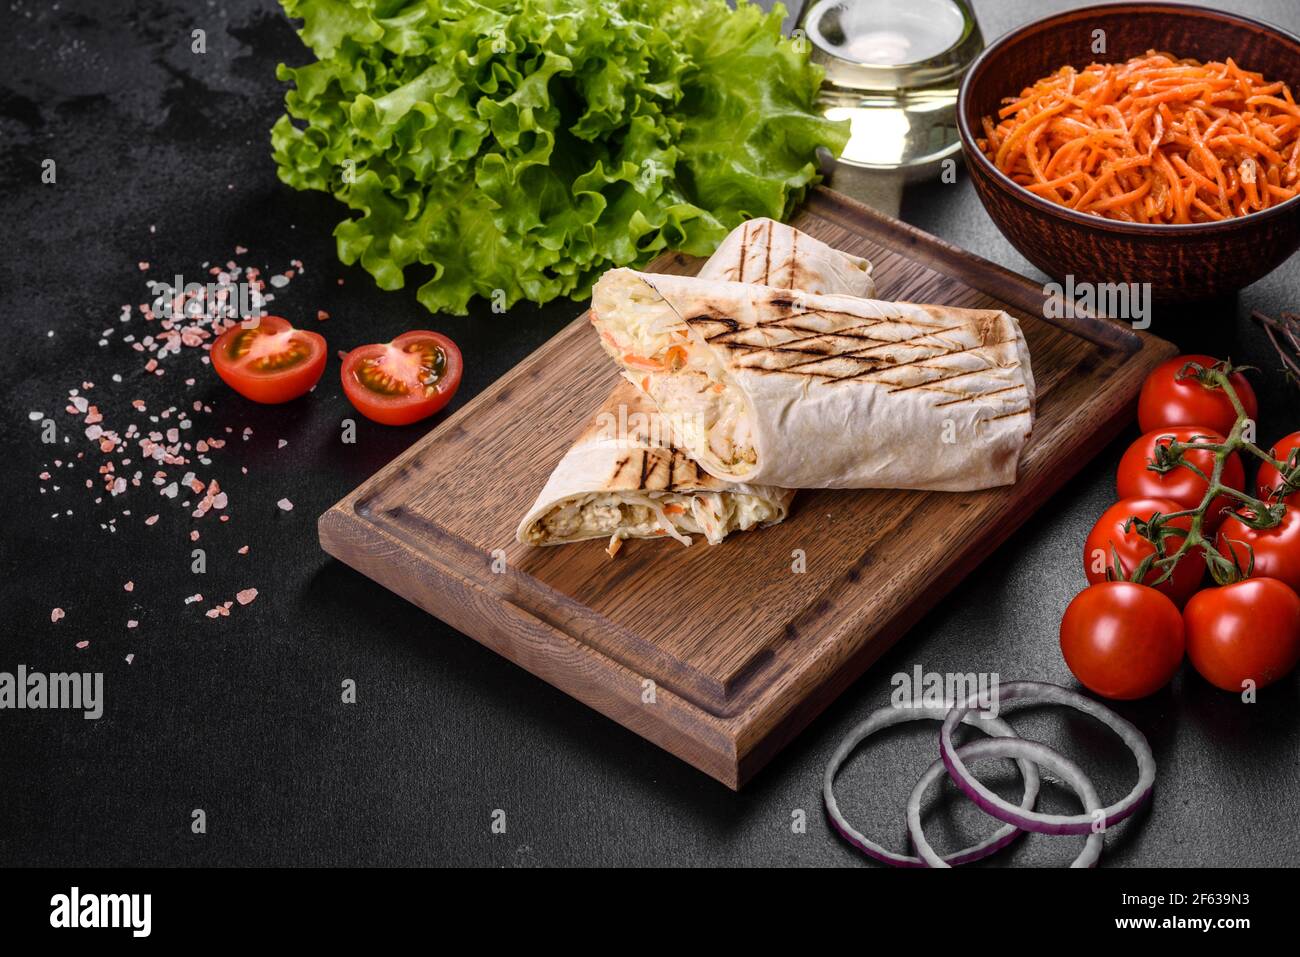 Délicieux shawarma frais avec de la viande et des légumes sur une table en béton sombre. Restauration rapide, cuisine turque Banque D'Images